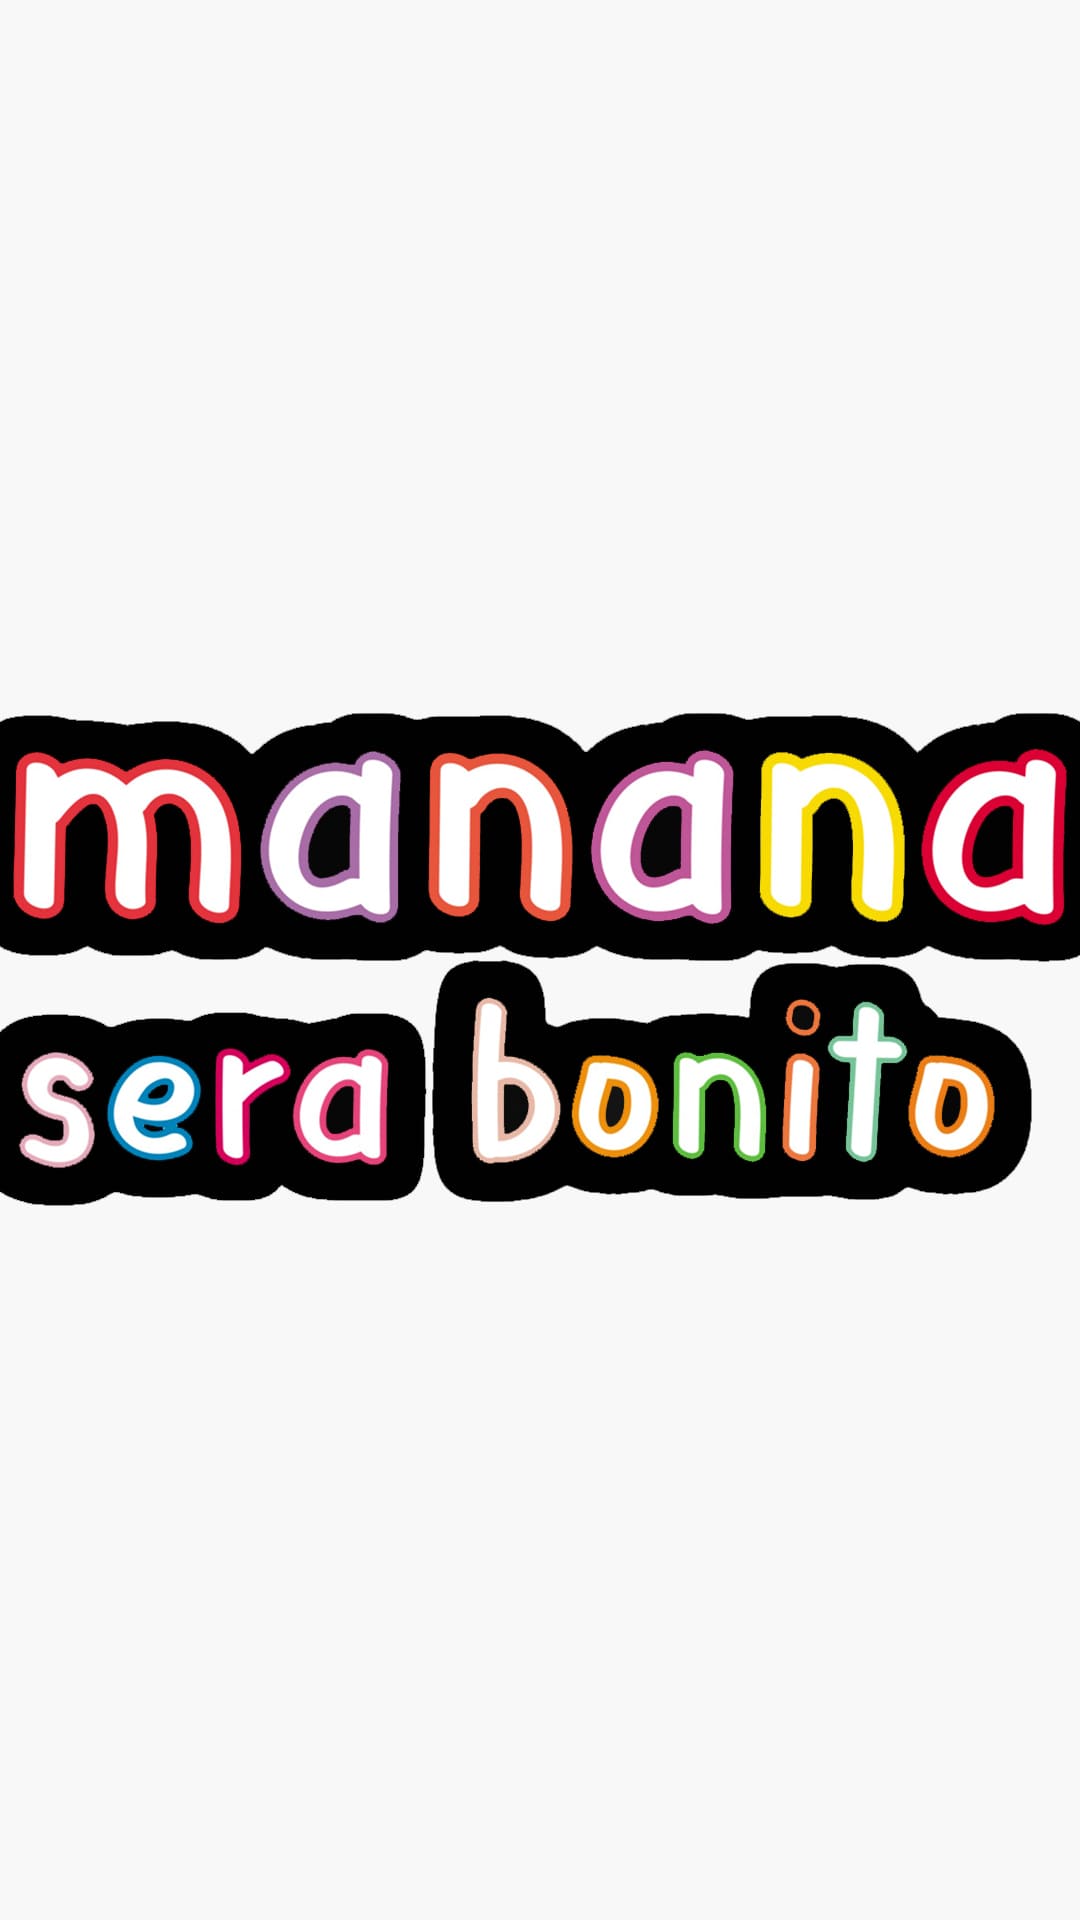 Manana Sera Bonito Wallpapers